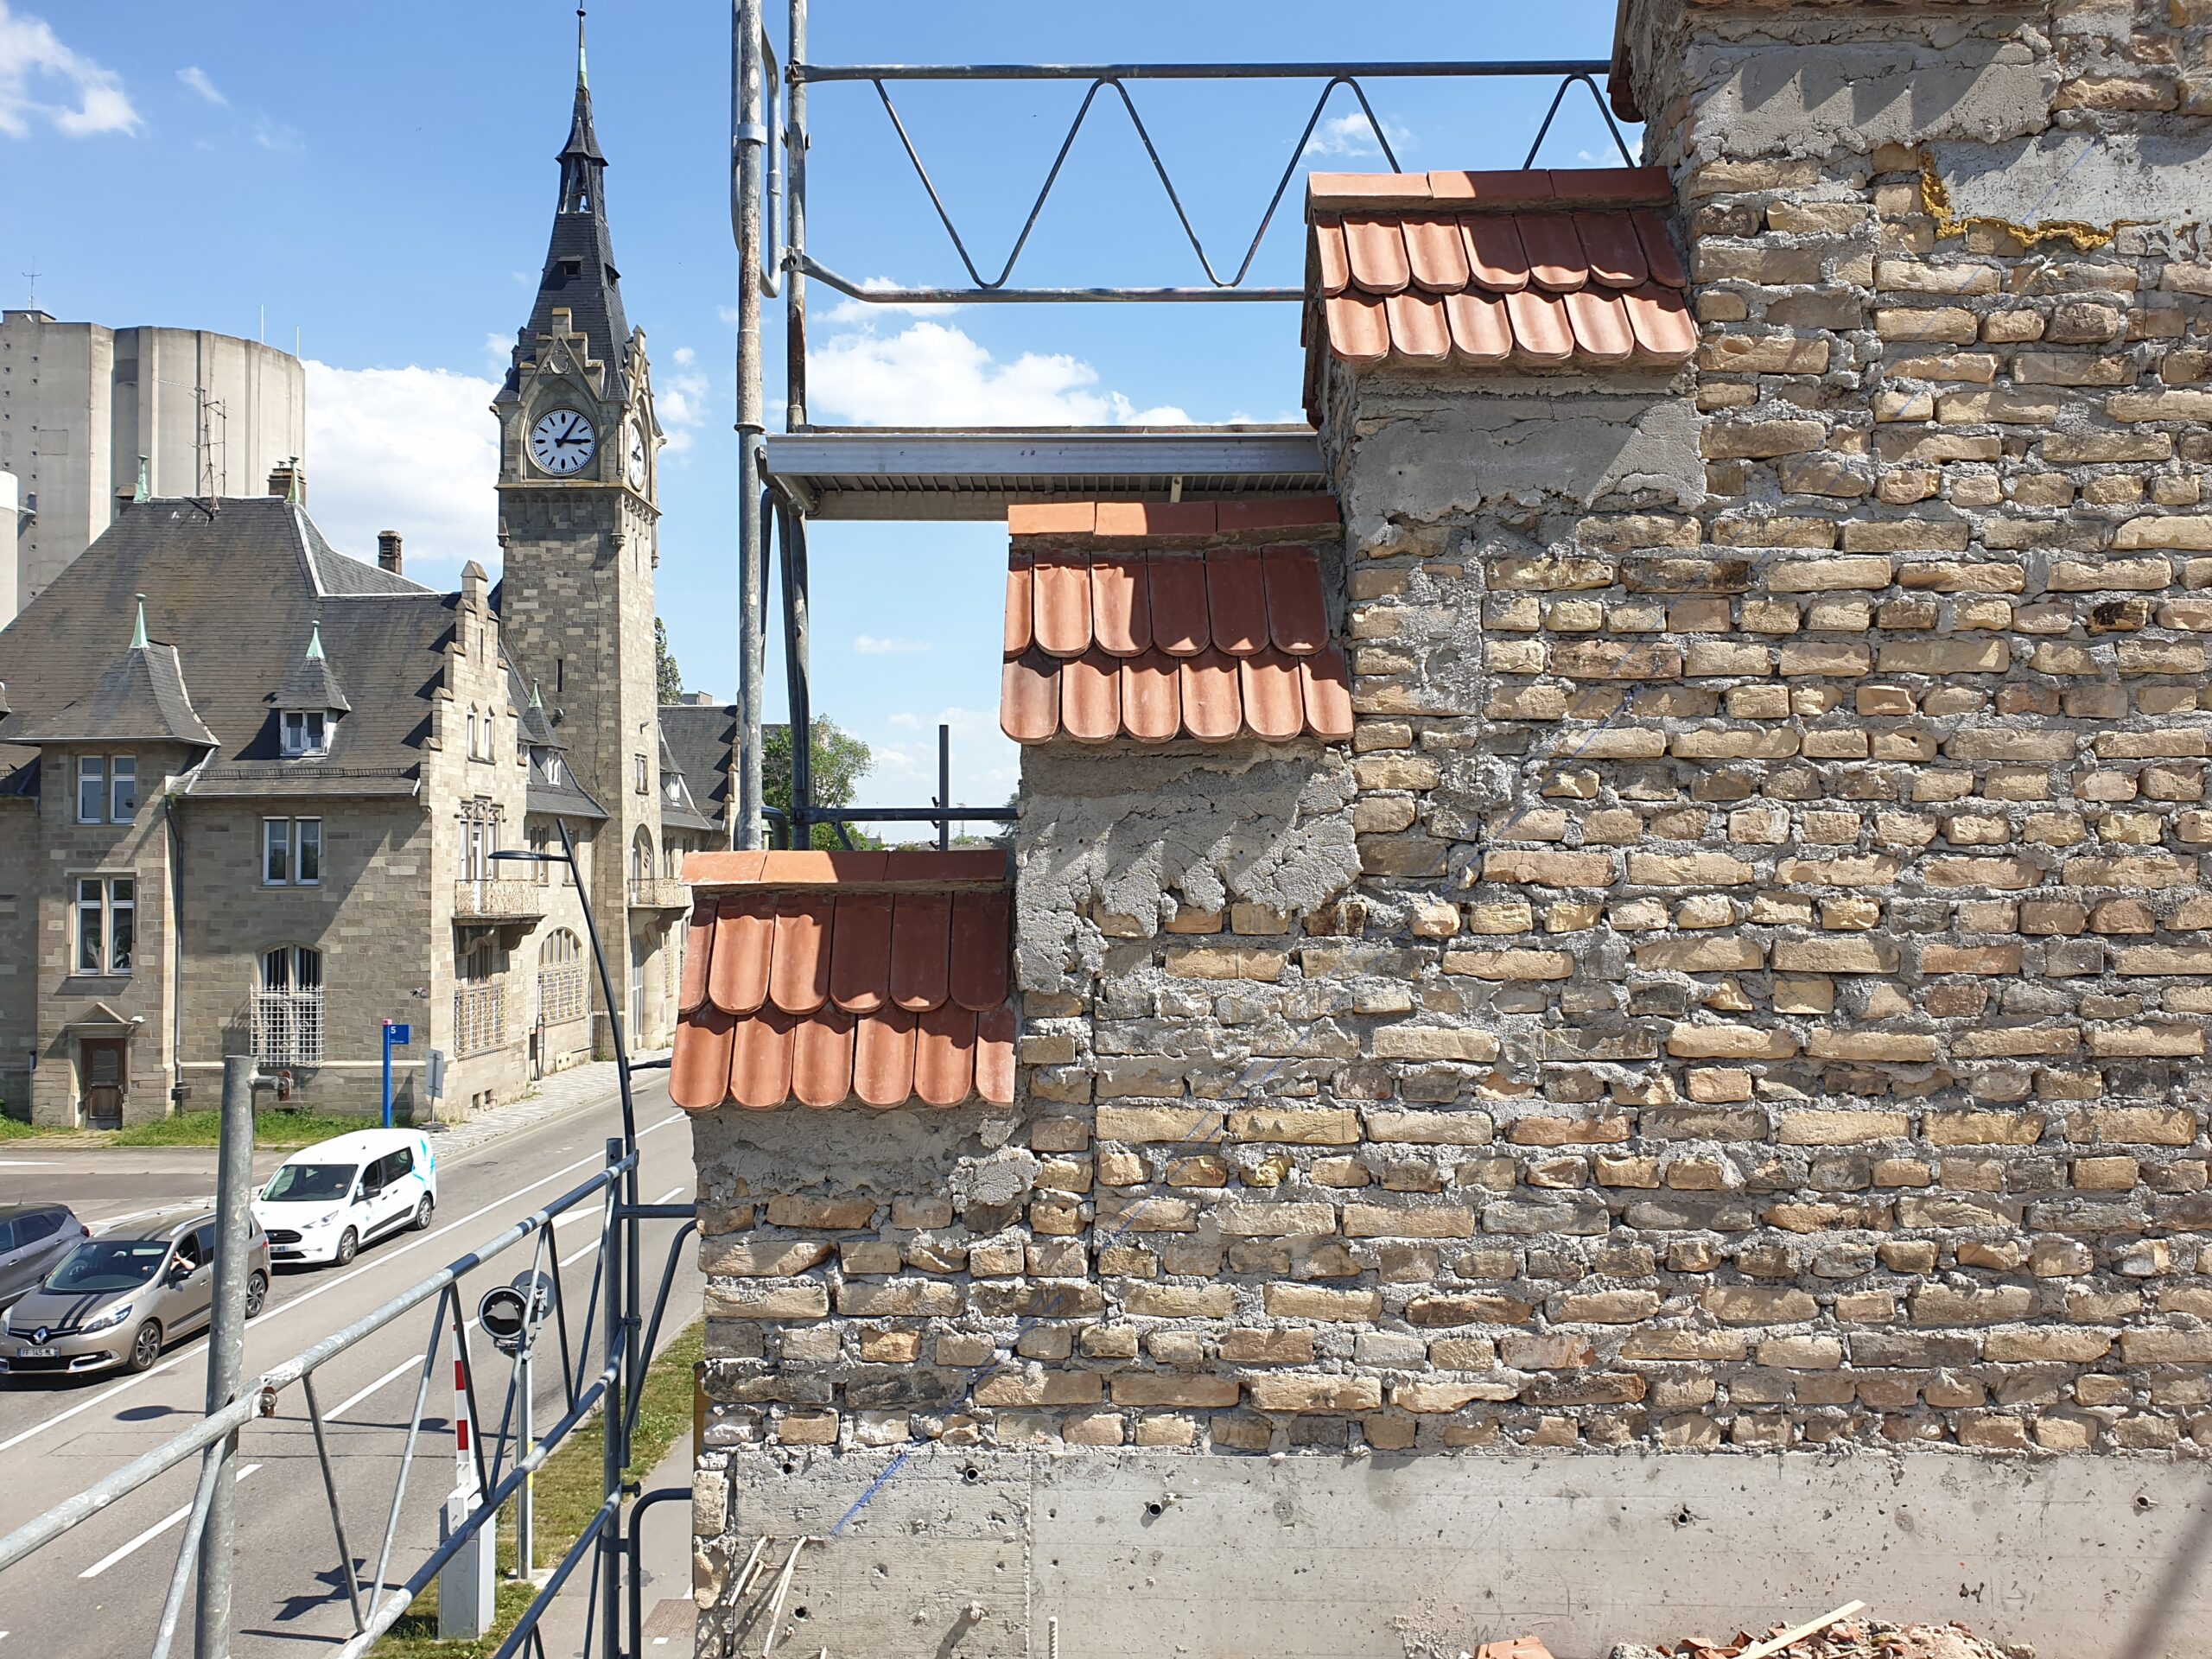 Détail architectural, les pignons à redans de la Maison Schutzenberger restaurés. La capitainerie du Port en arrière plan